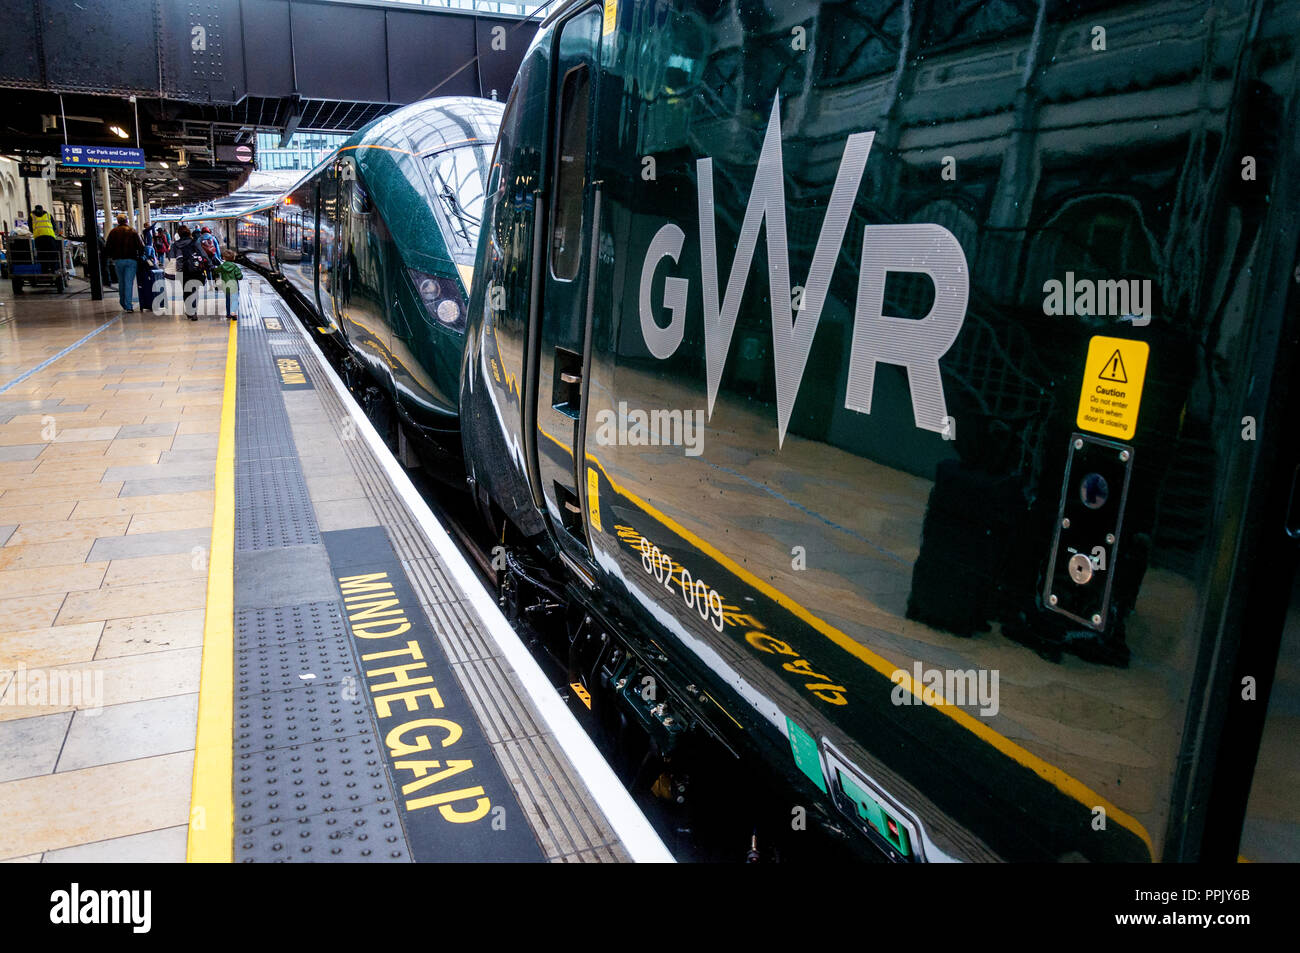 Réflexions de passagers dans un train à la gare de Paddington GWR, London, UK Banque D'Images